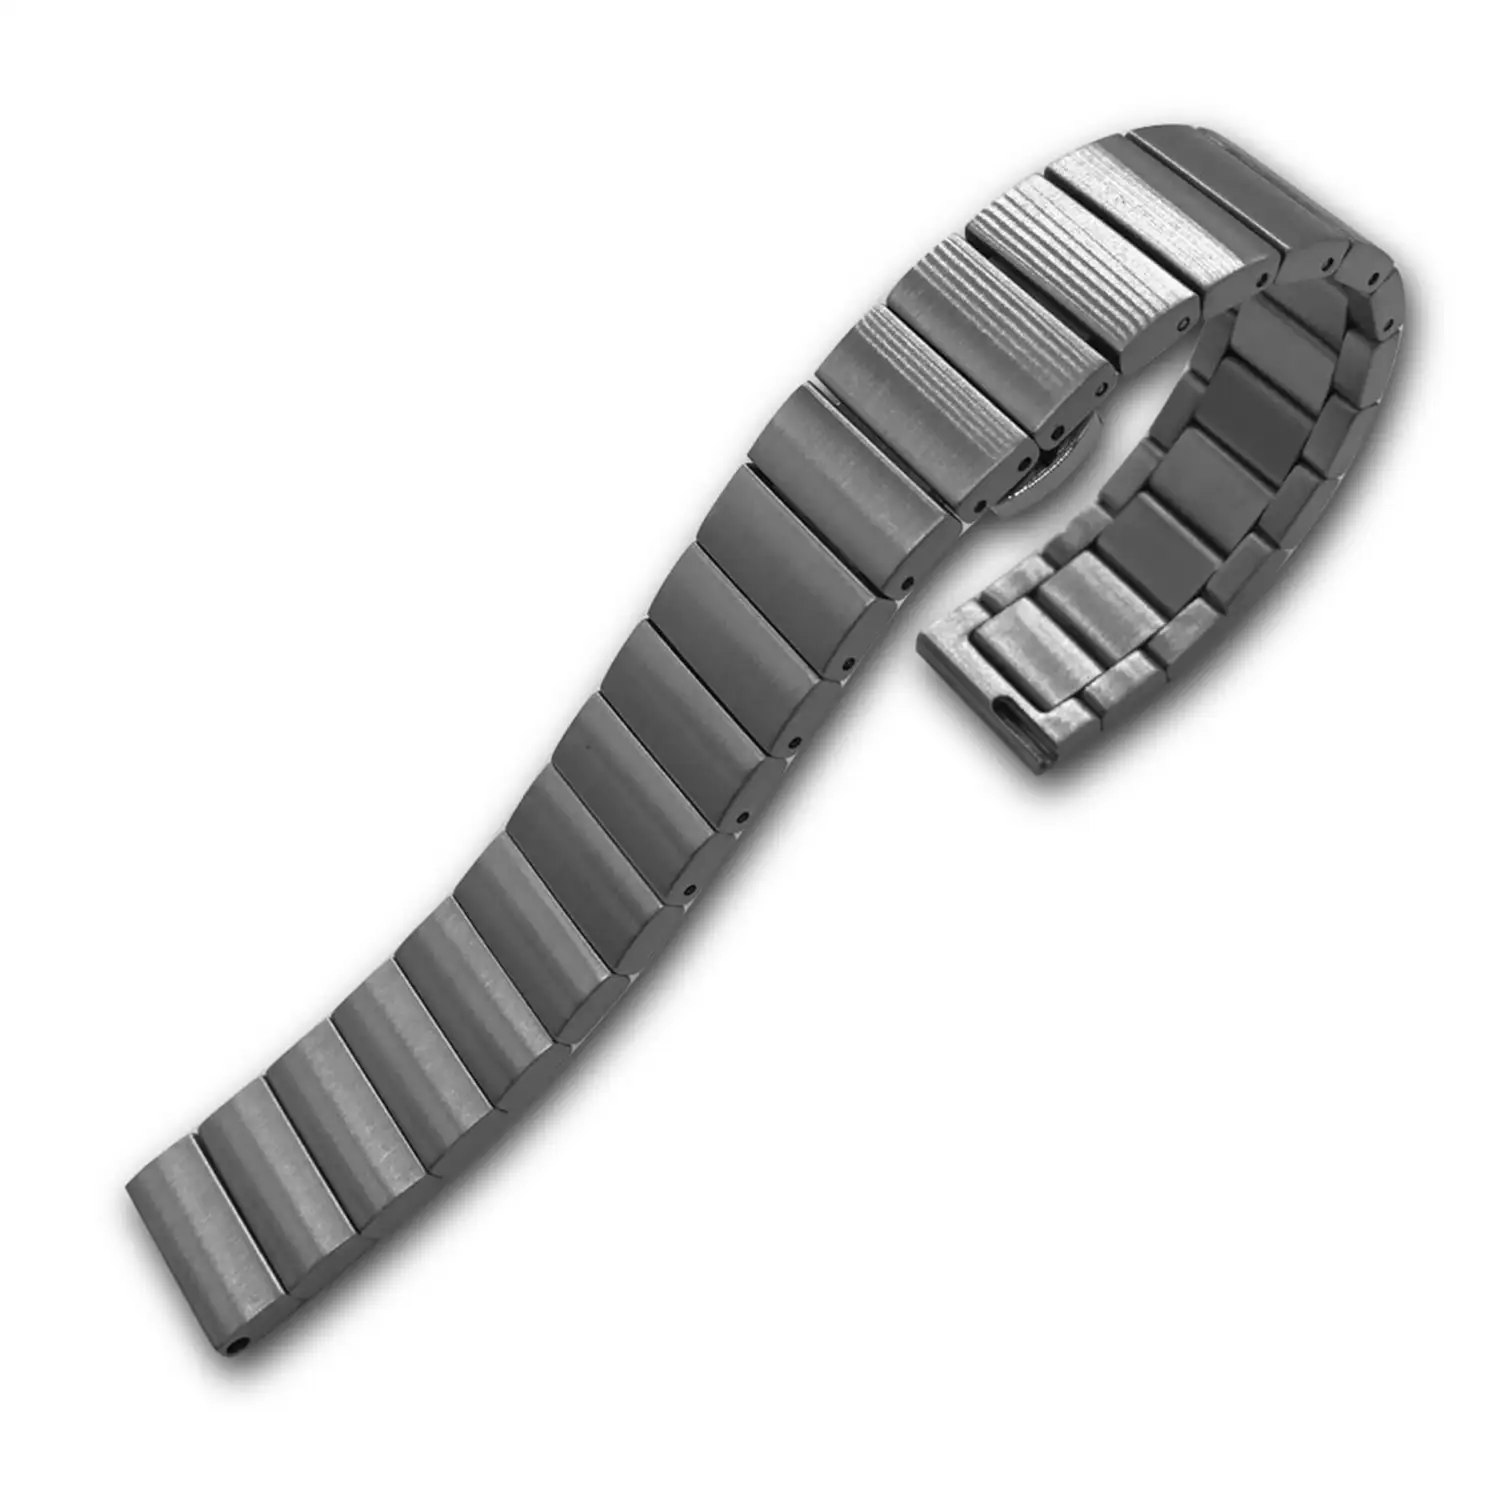 Correa universal de acero inoxidable para relojes de 20mm.Sistema Quick  Release de fácil cambio.